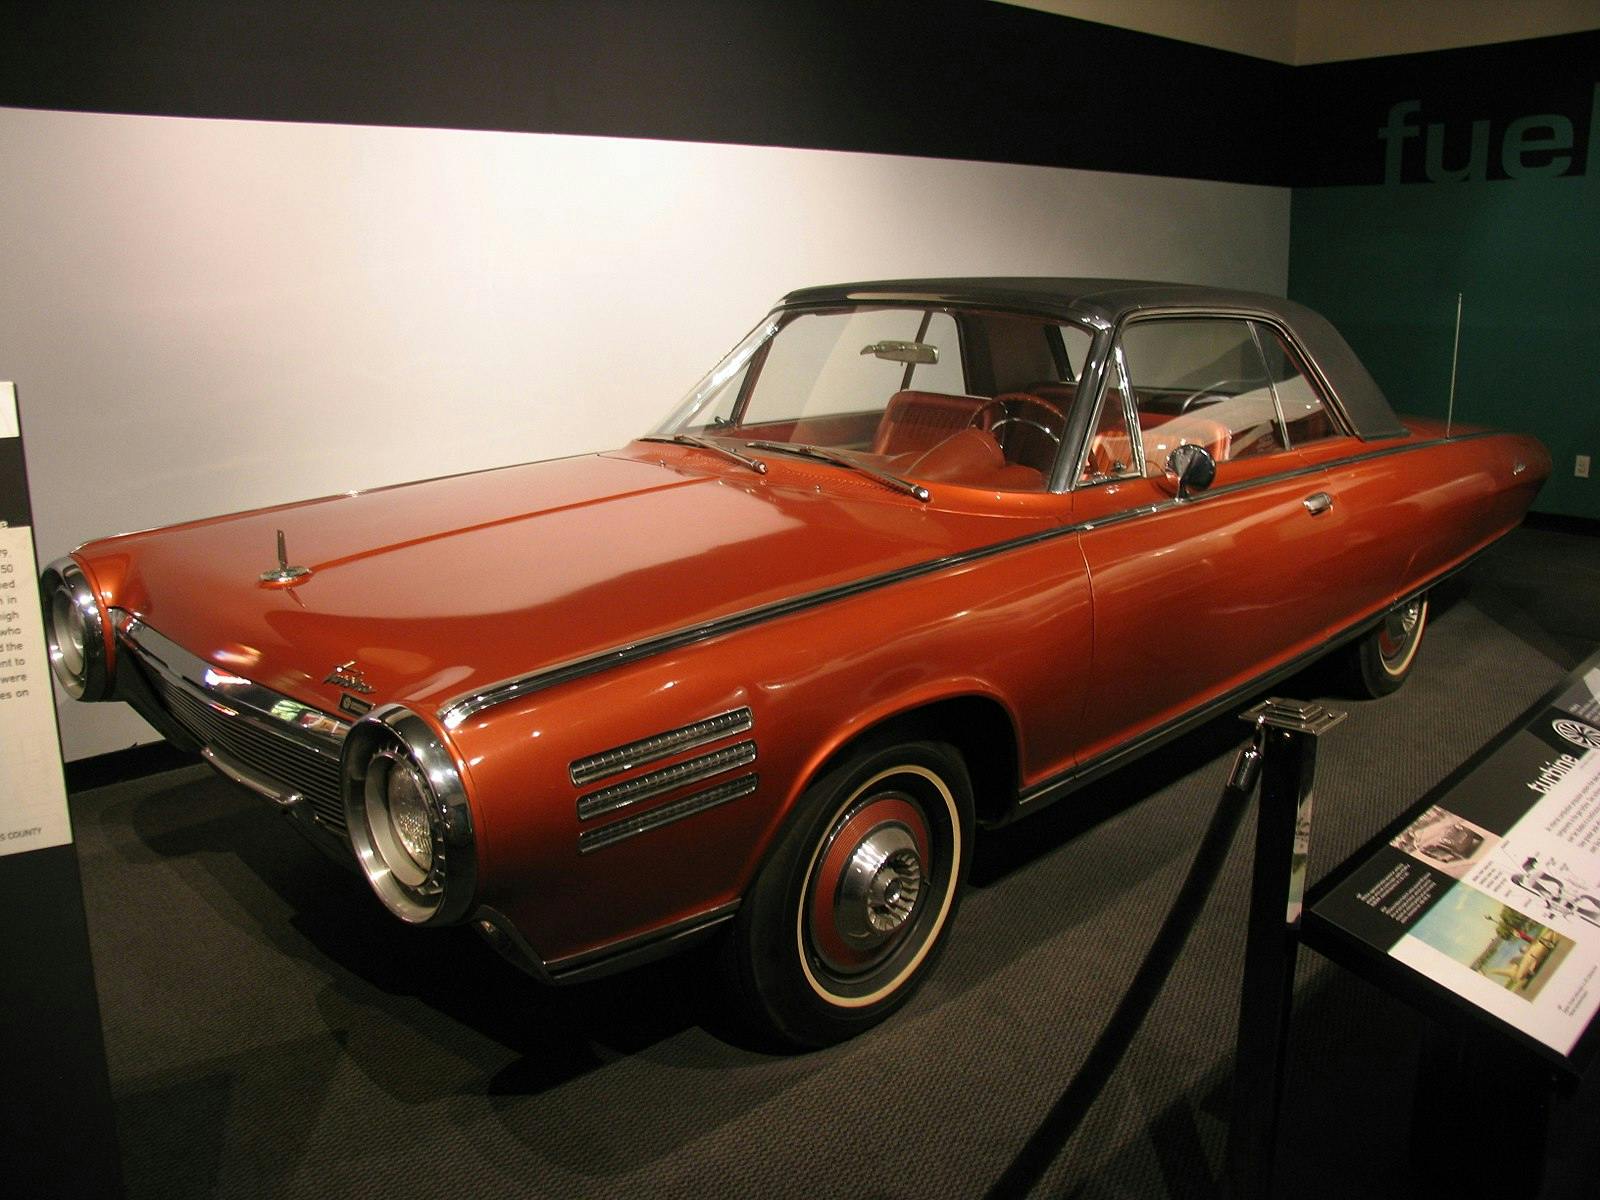 1963 Chrysler turbine car